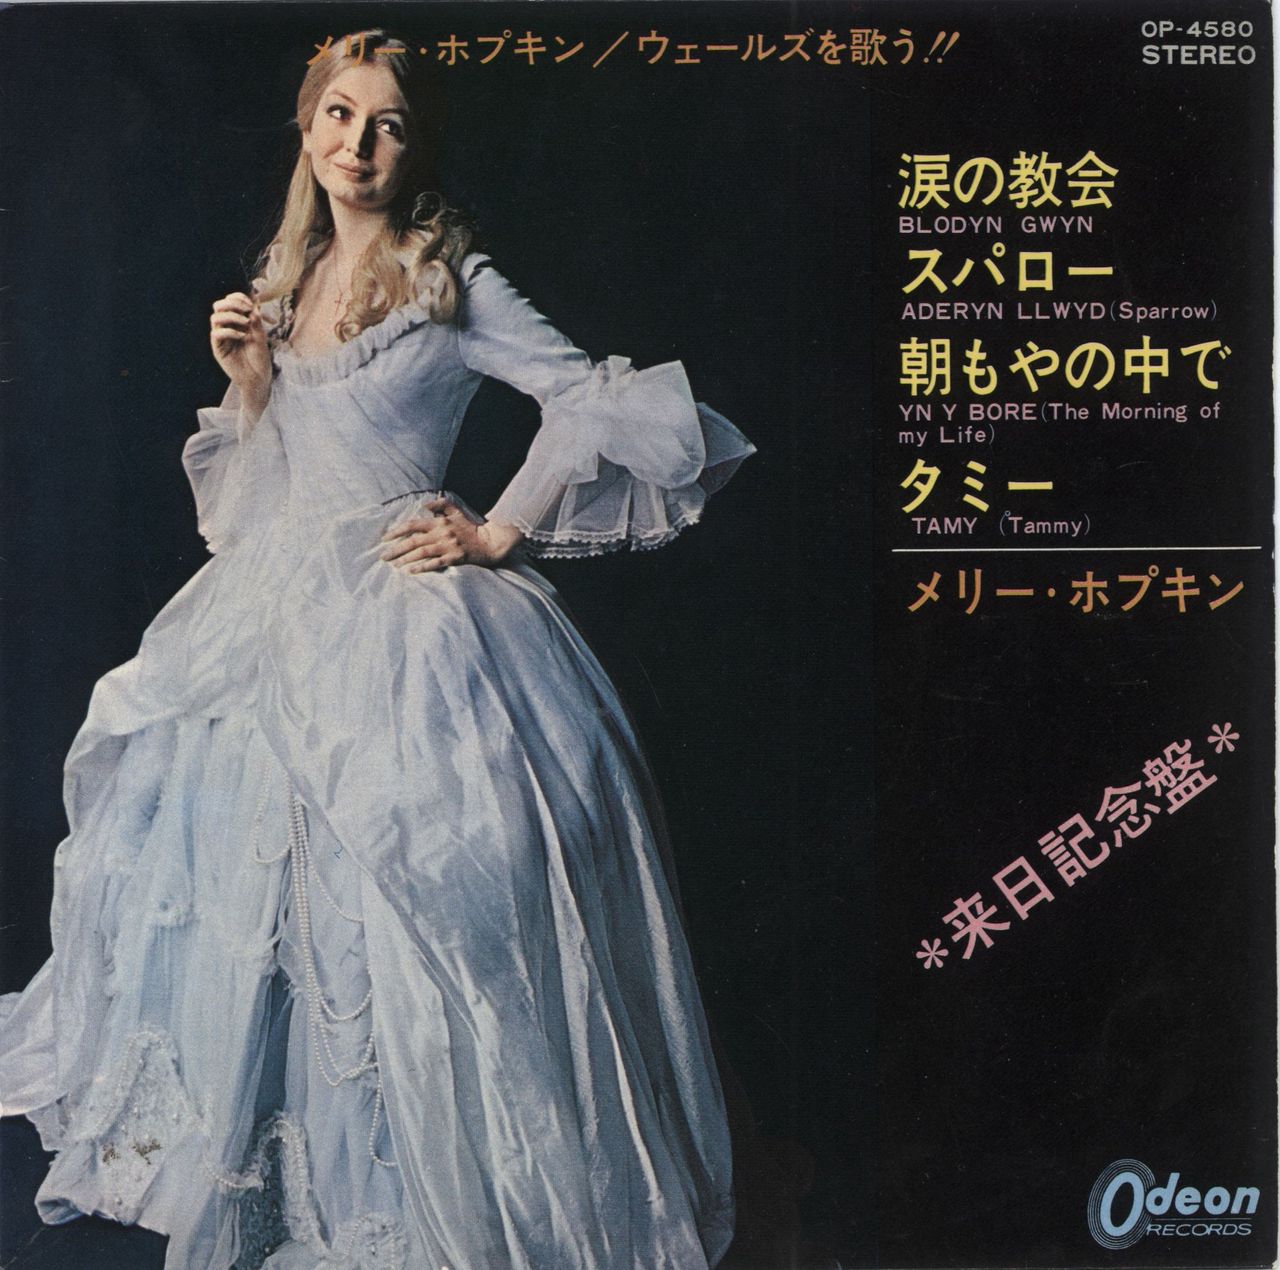 Mary Hopkin Blodyn Gwyn Japanese 7" vinyl single (7 inch record / 45) OP-4580